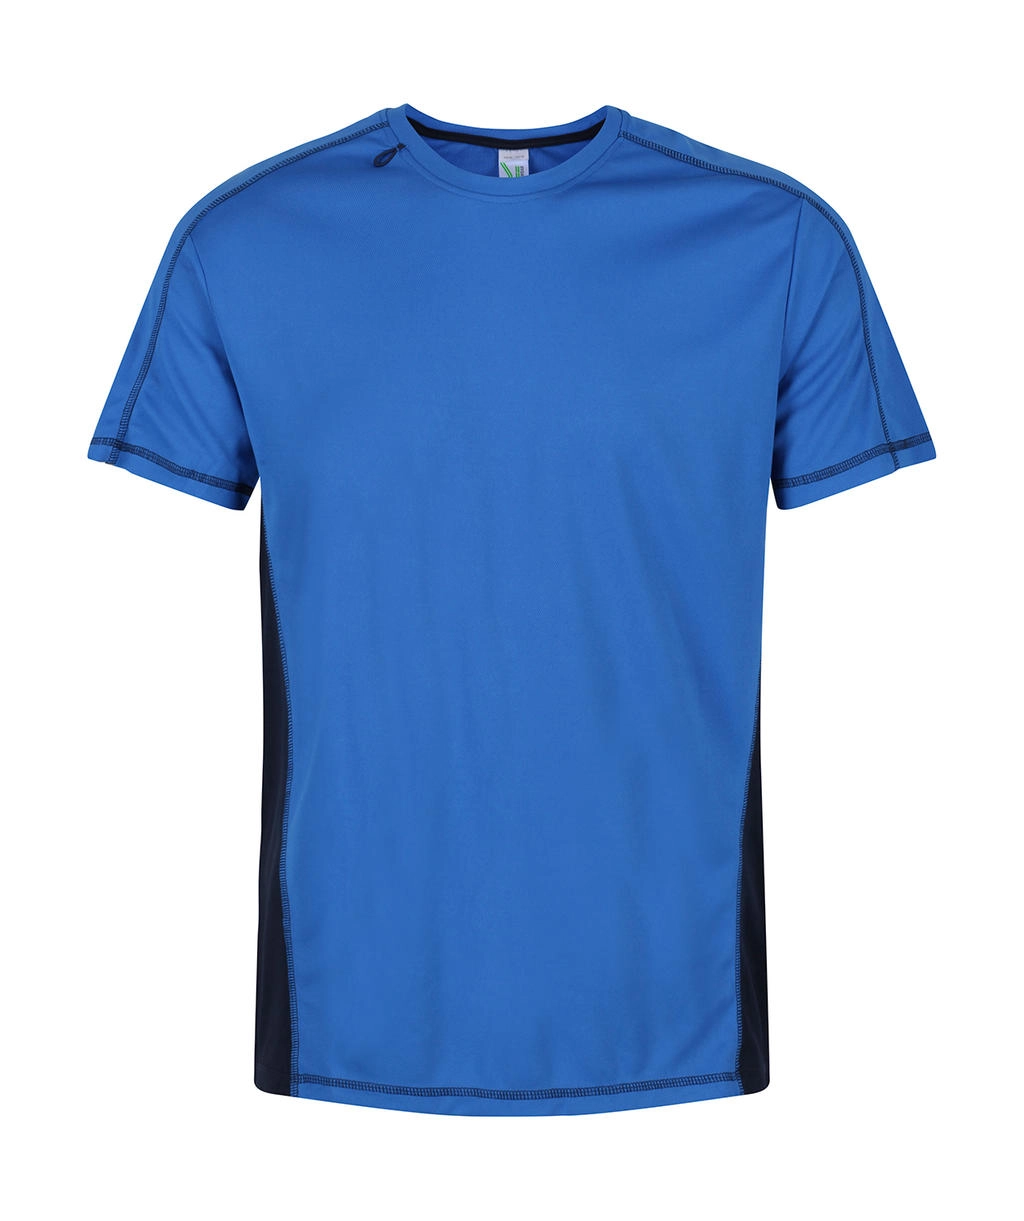 Beijing T-Shirt zum Besticken und Bedrucken in der Farbe Oxford Blue/Navy mit Ihren Logo, Schriftzug oder Motiv.